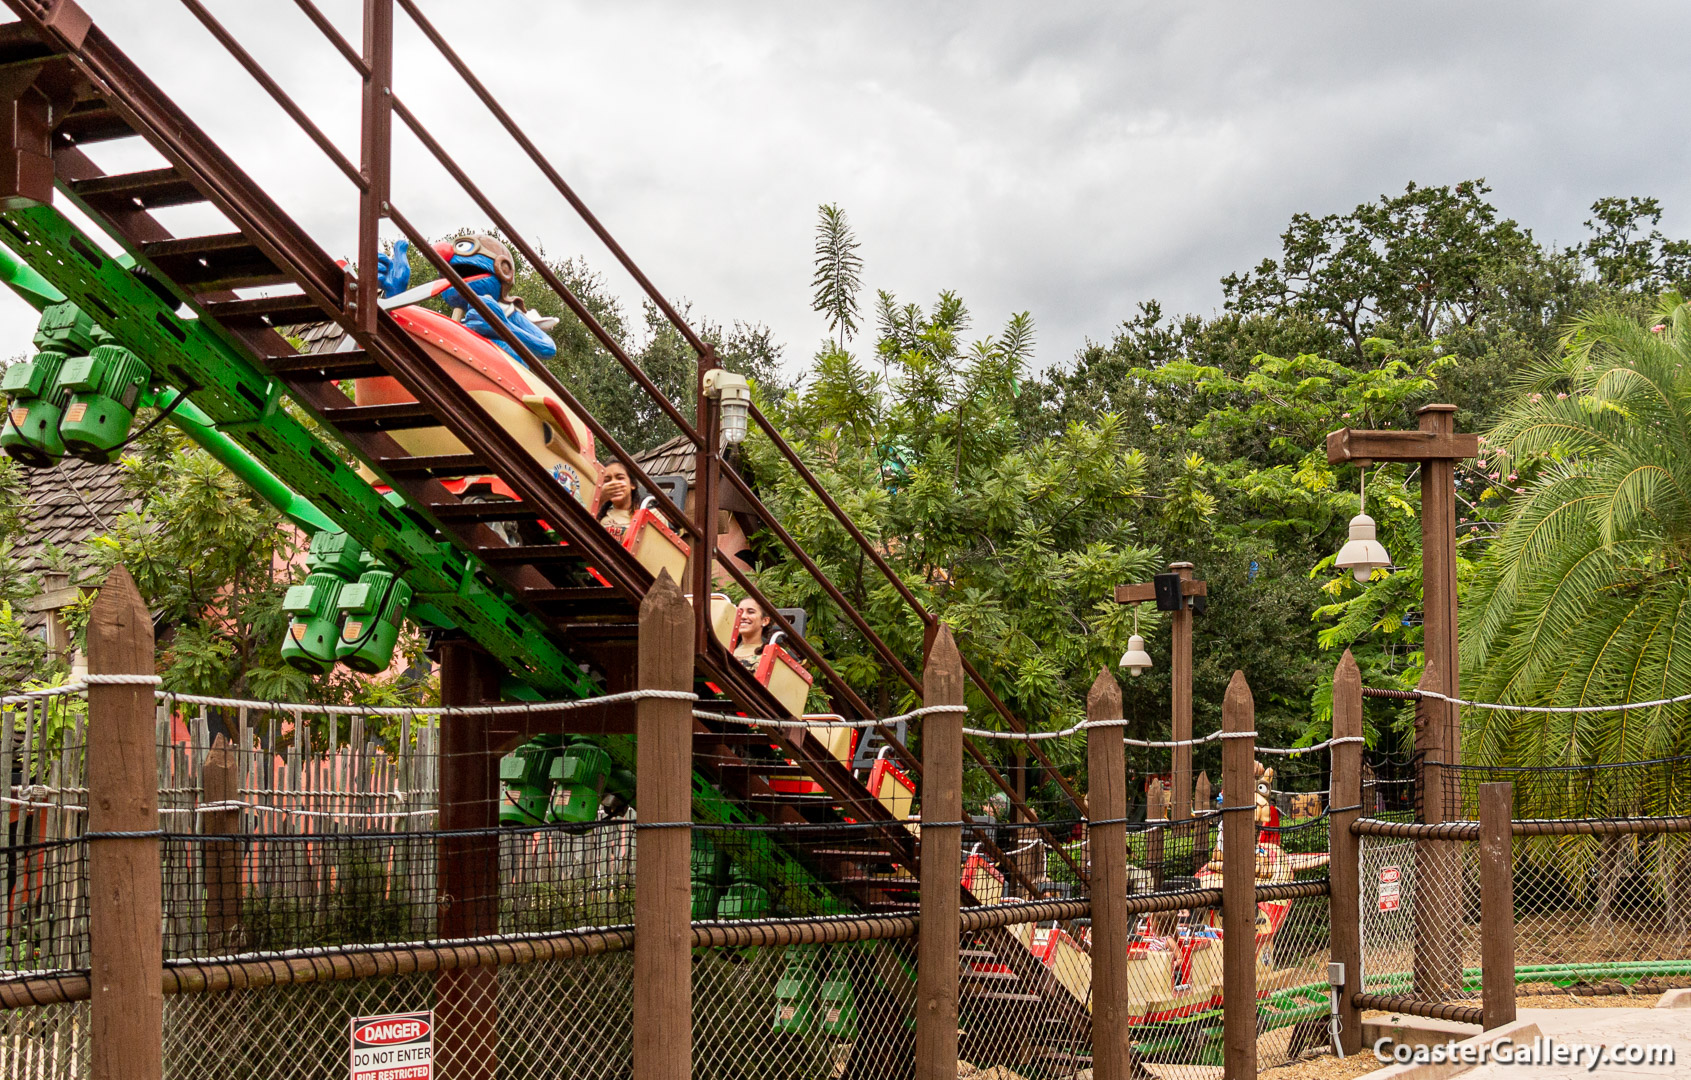 Air Grover roller coaster at Busch Gardens in Tampa, Florida